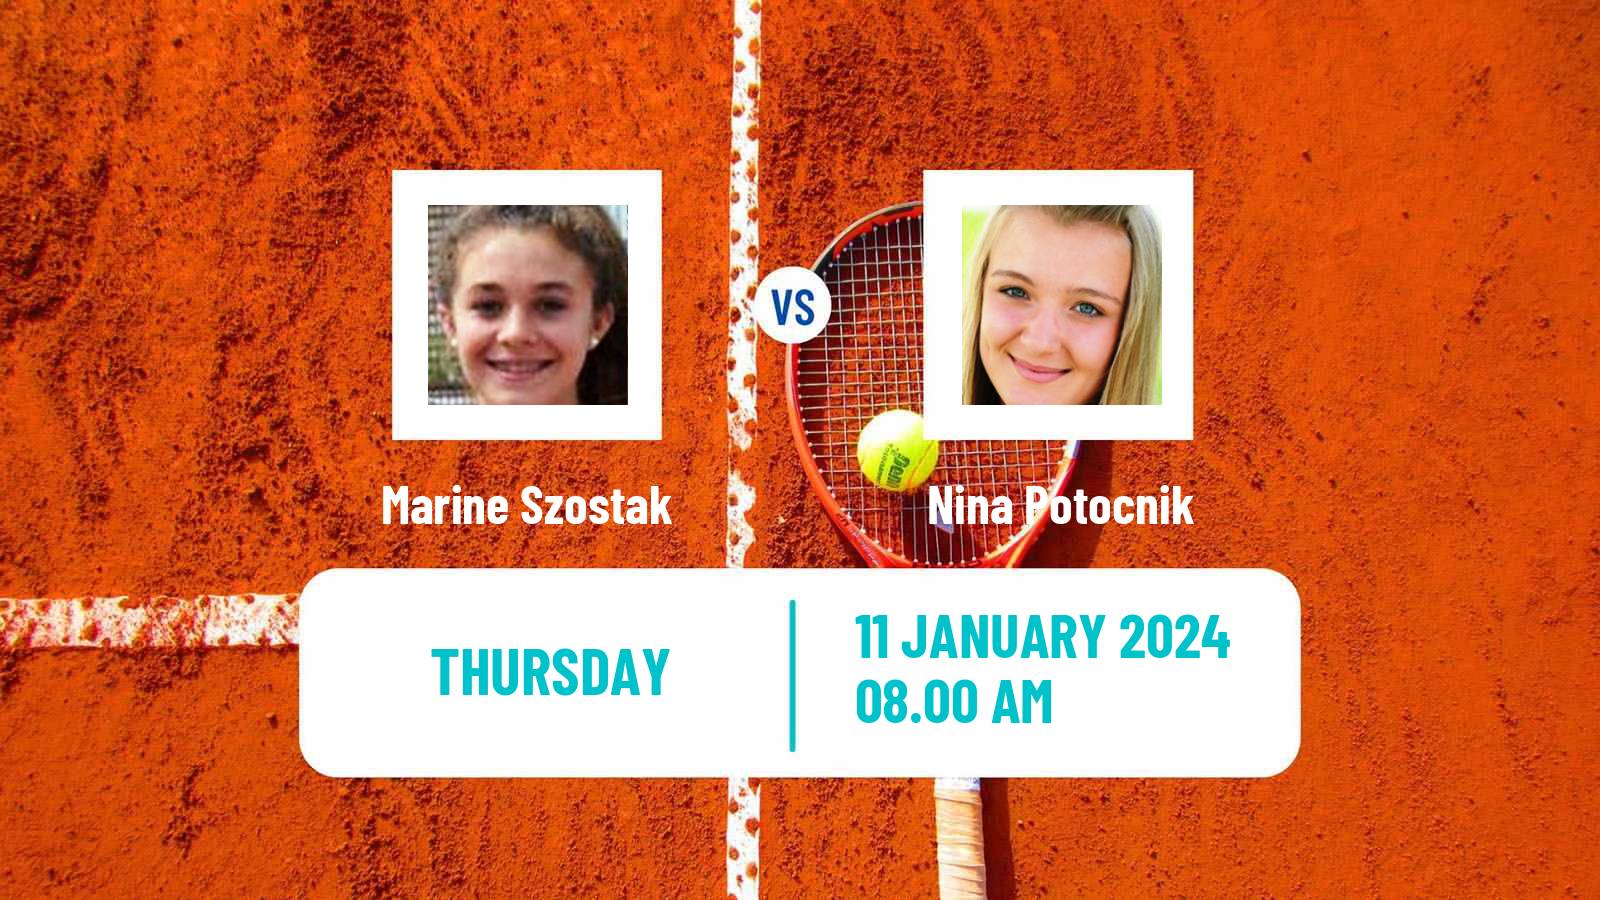 Tennis ITF W15 Esch Alzette Women Marine Szostak - Nina Potocnik